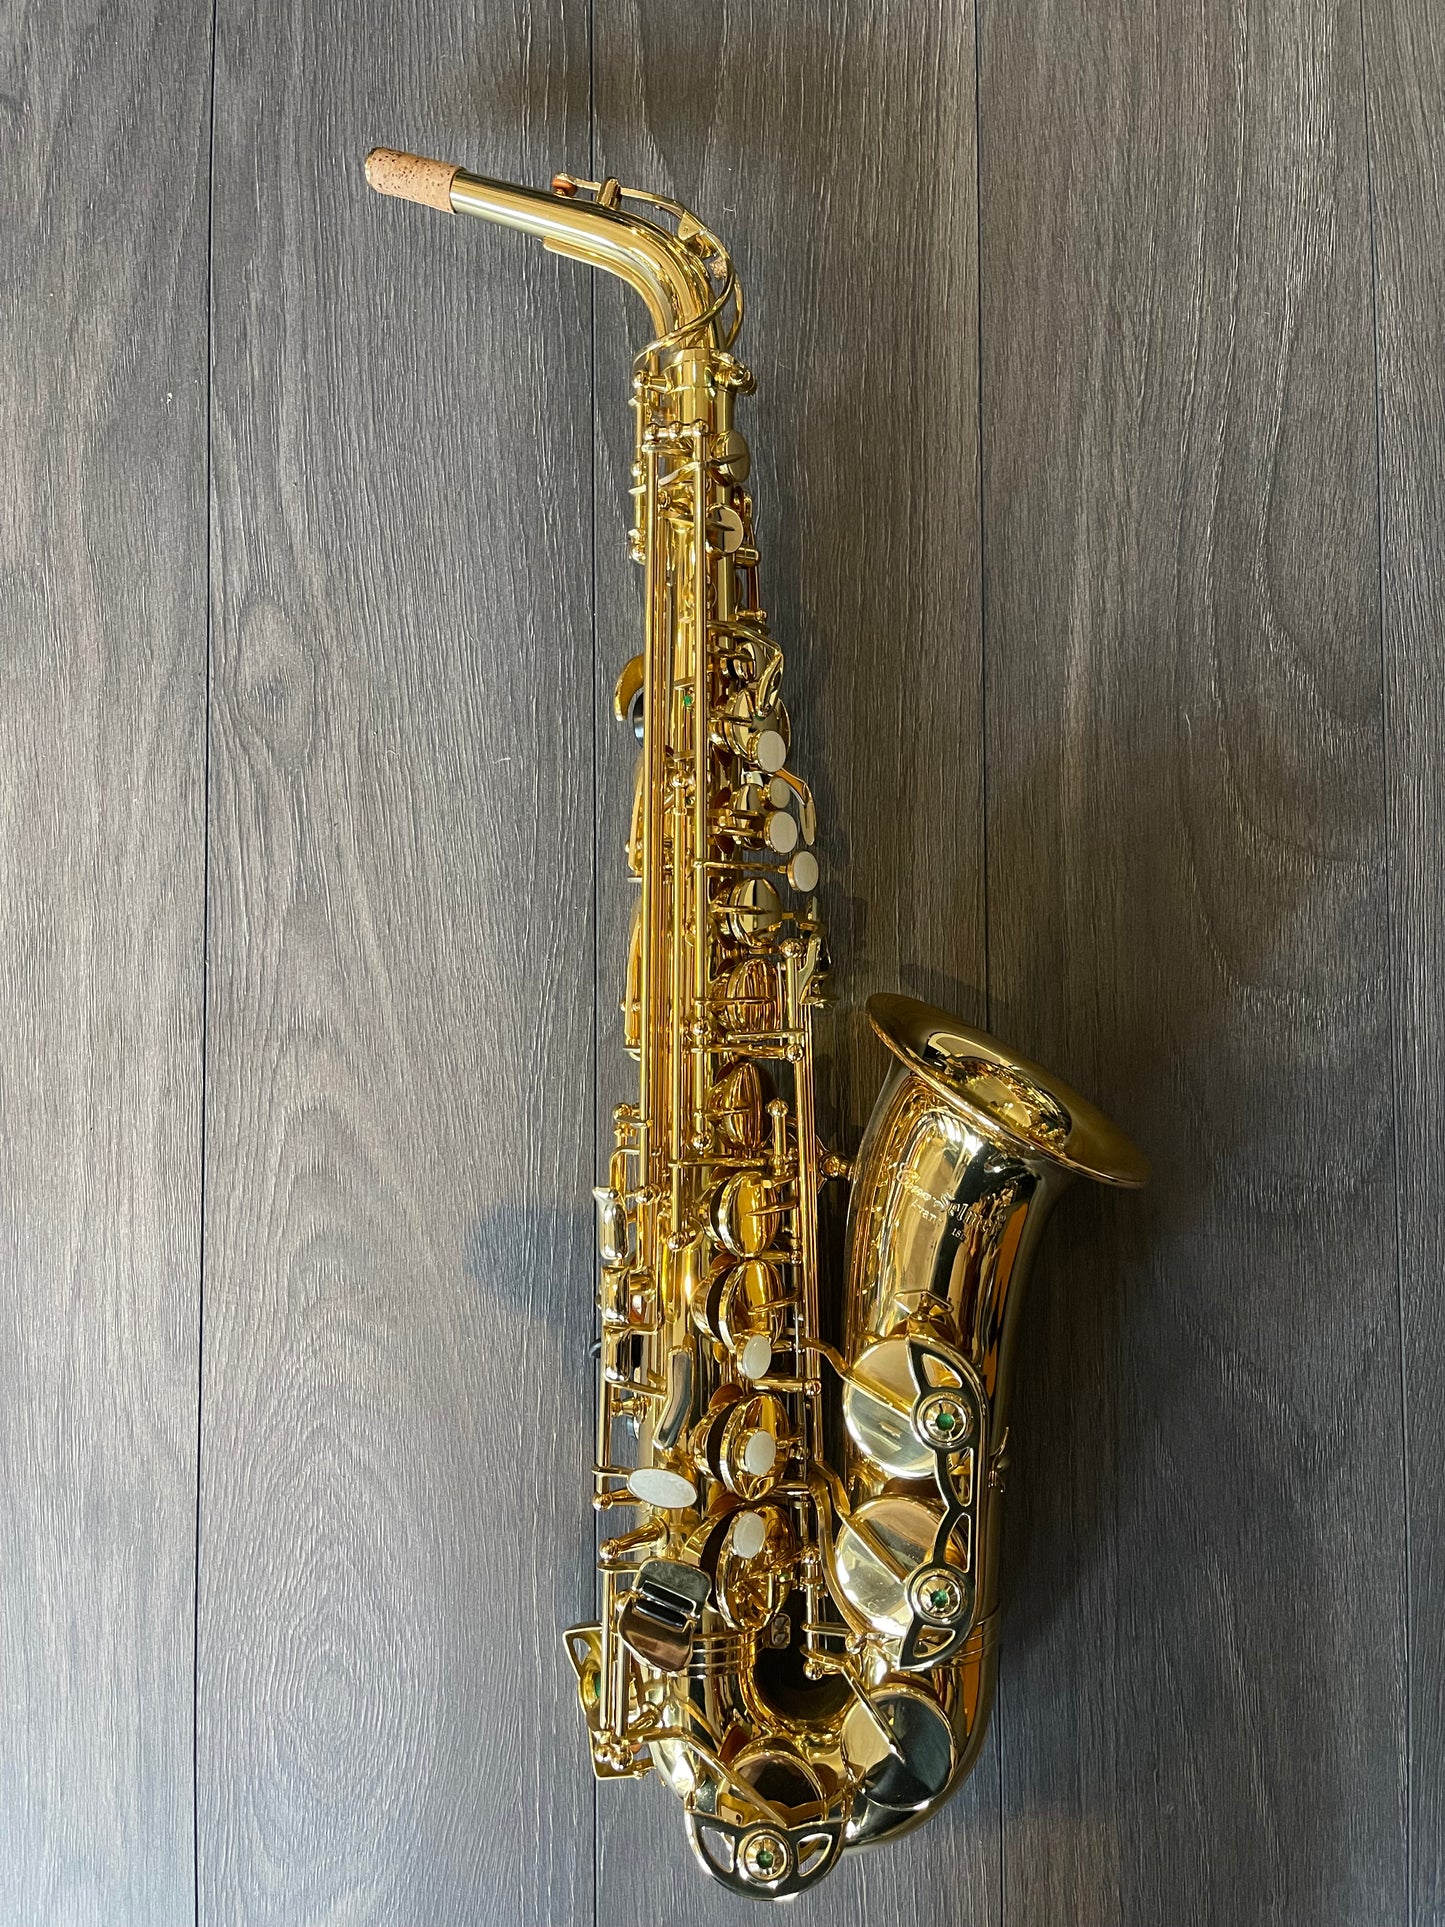 Conn Selmer Avant DAS 180 Alto Saxophone Gold Lacquer